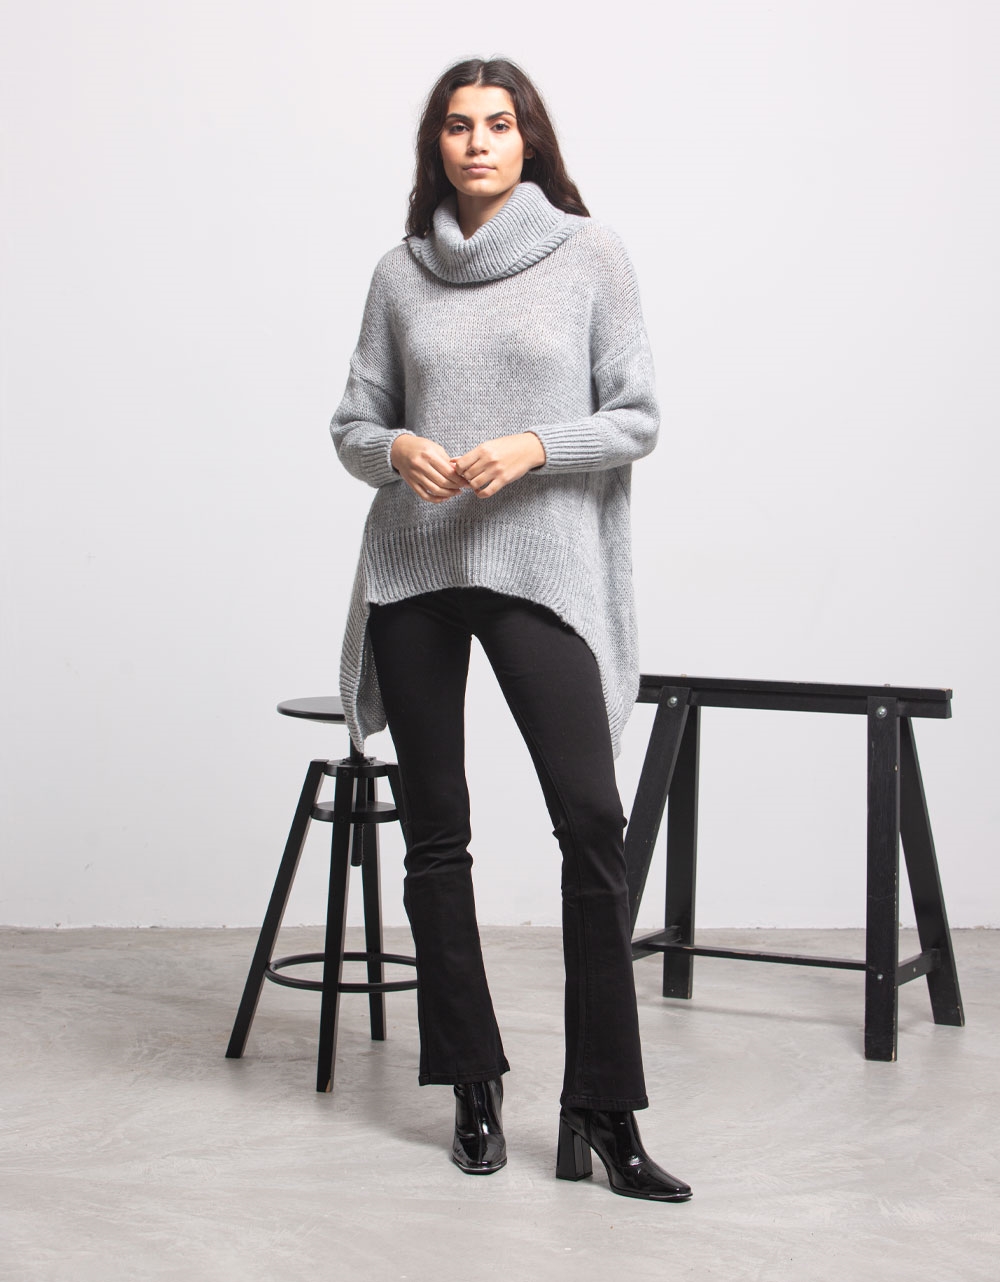 Εικόνα από Γυναικεία μπλούζα πλεκτή με ασύμμετρο σχέδιο Γκρι